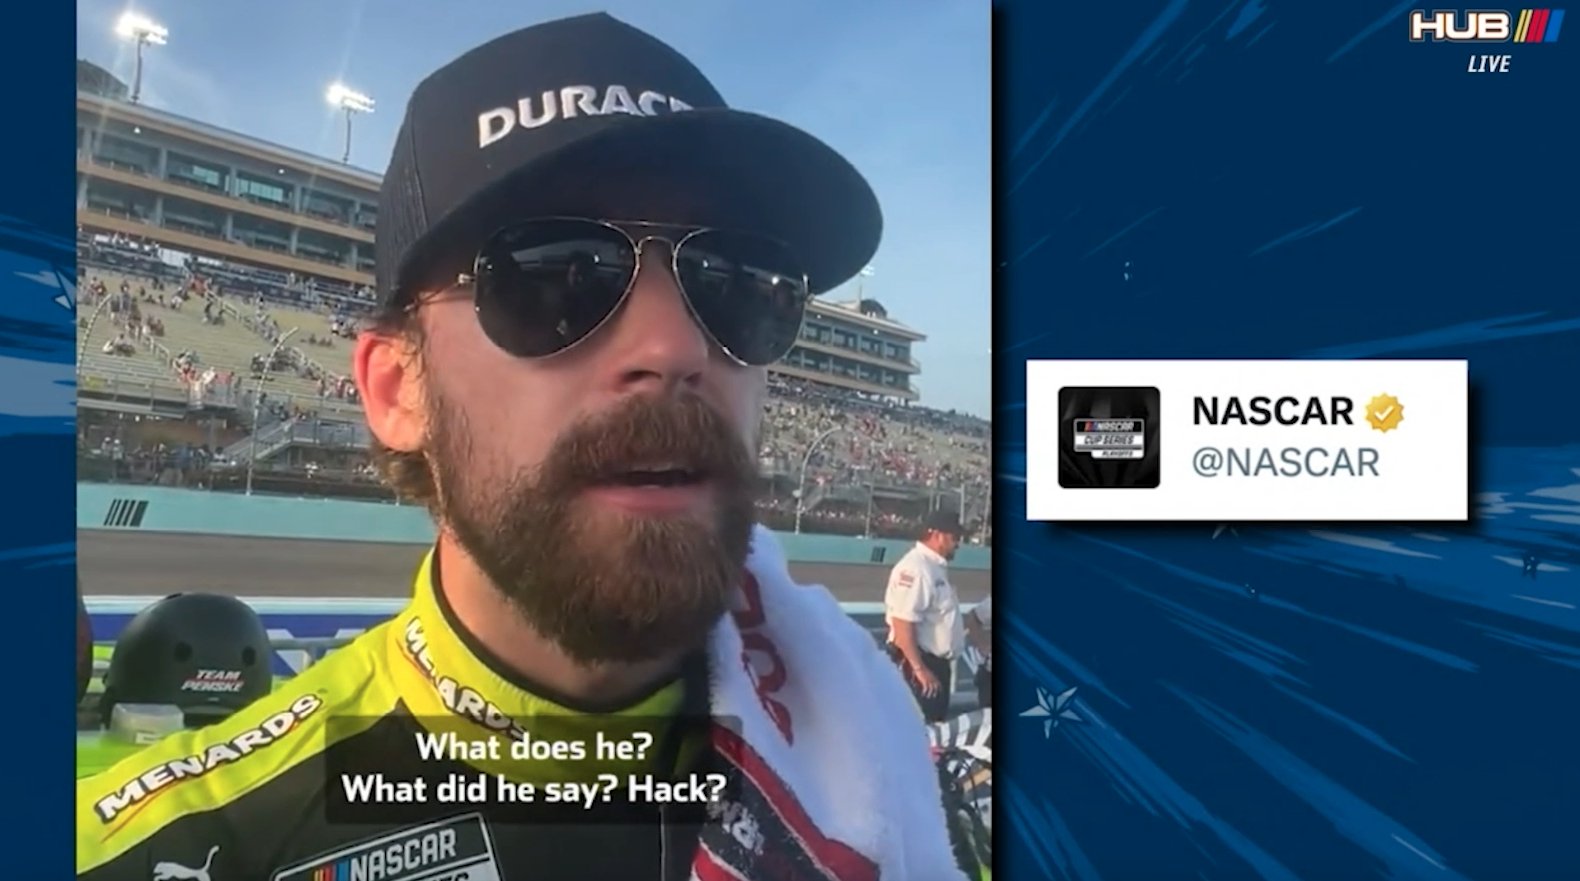 Ryan Blaney Says Hack Dig at Denny Hamlin Was Half Joking